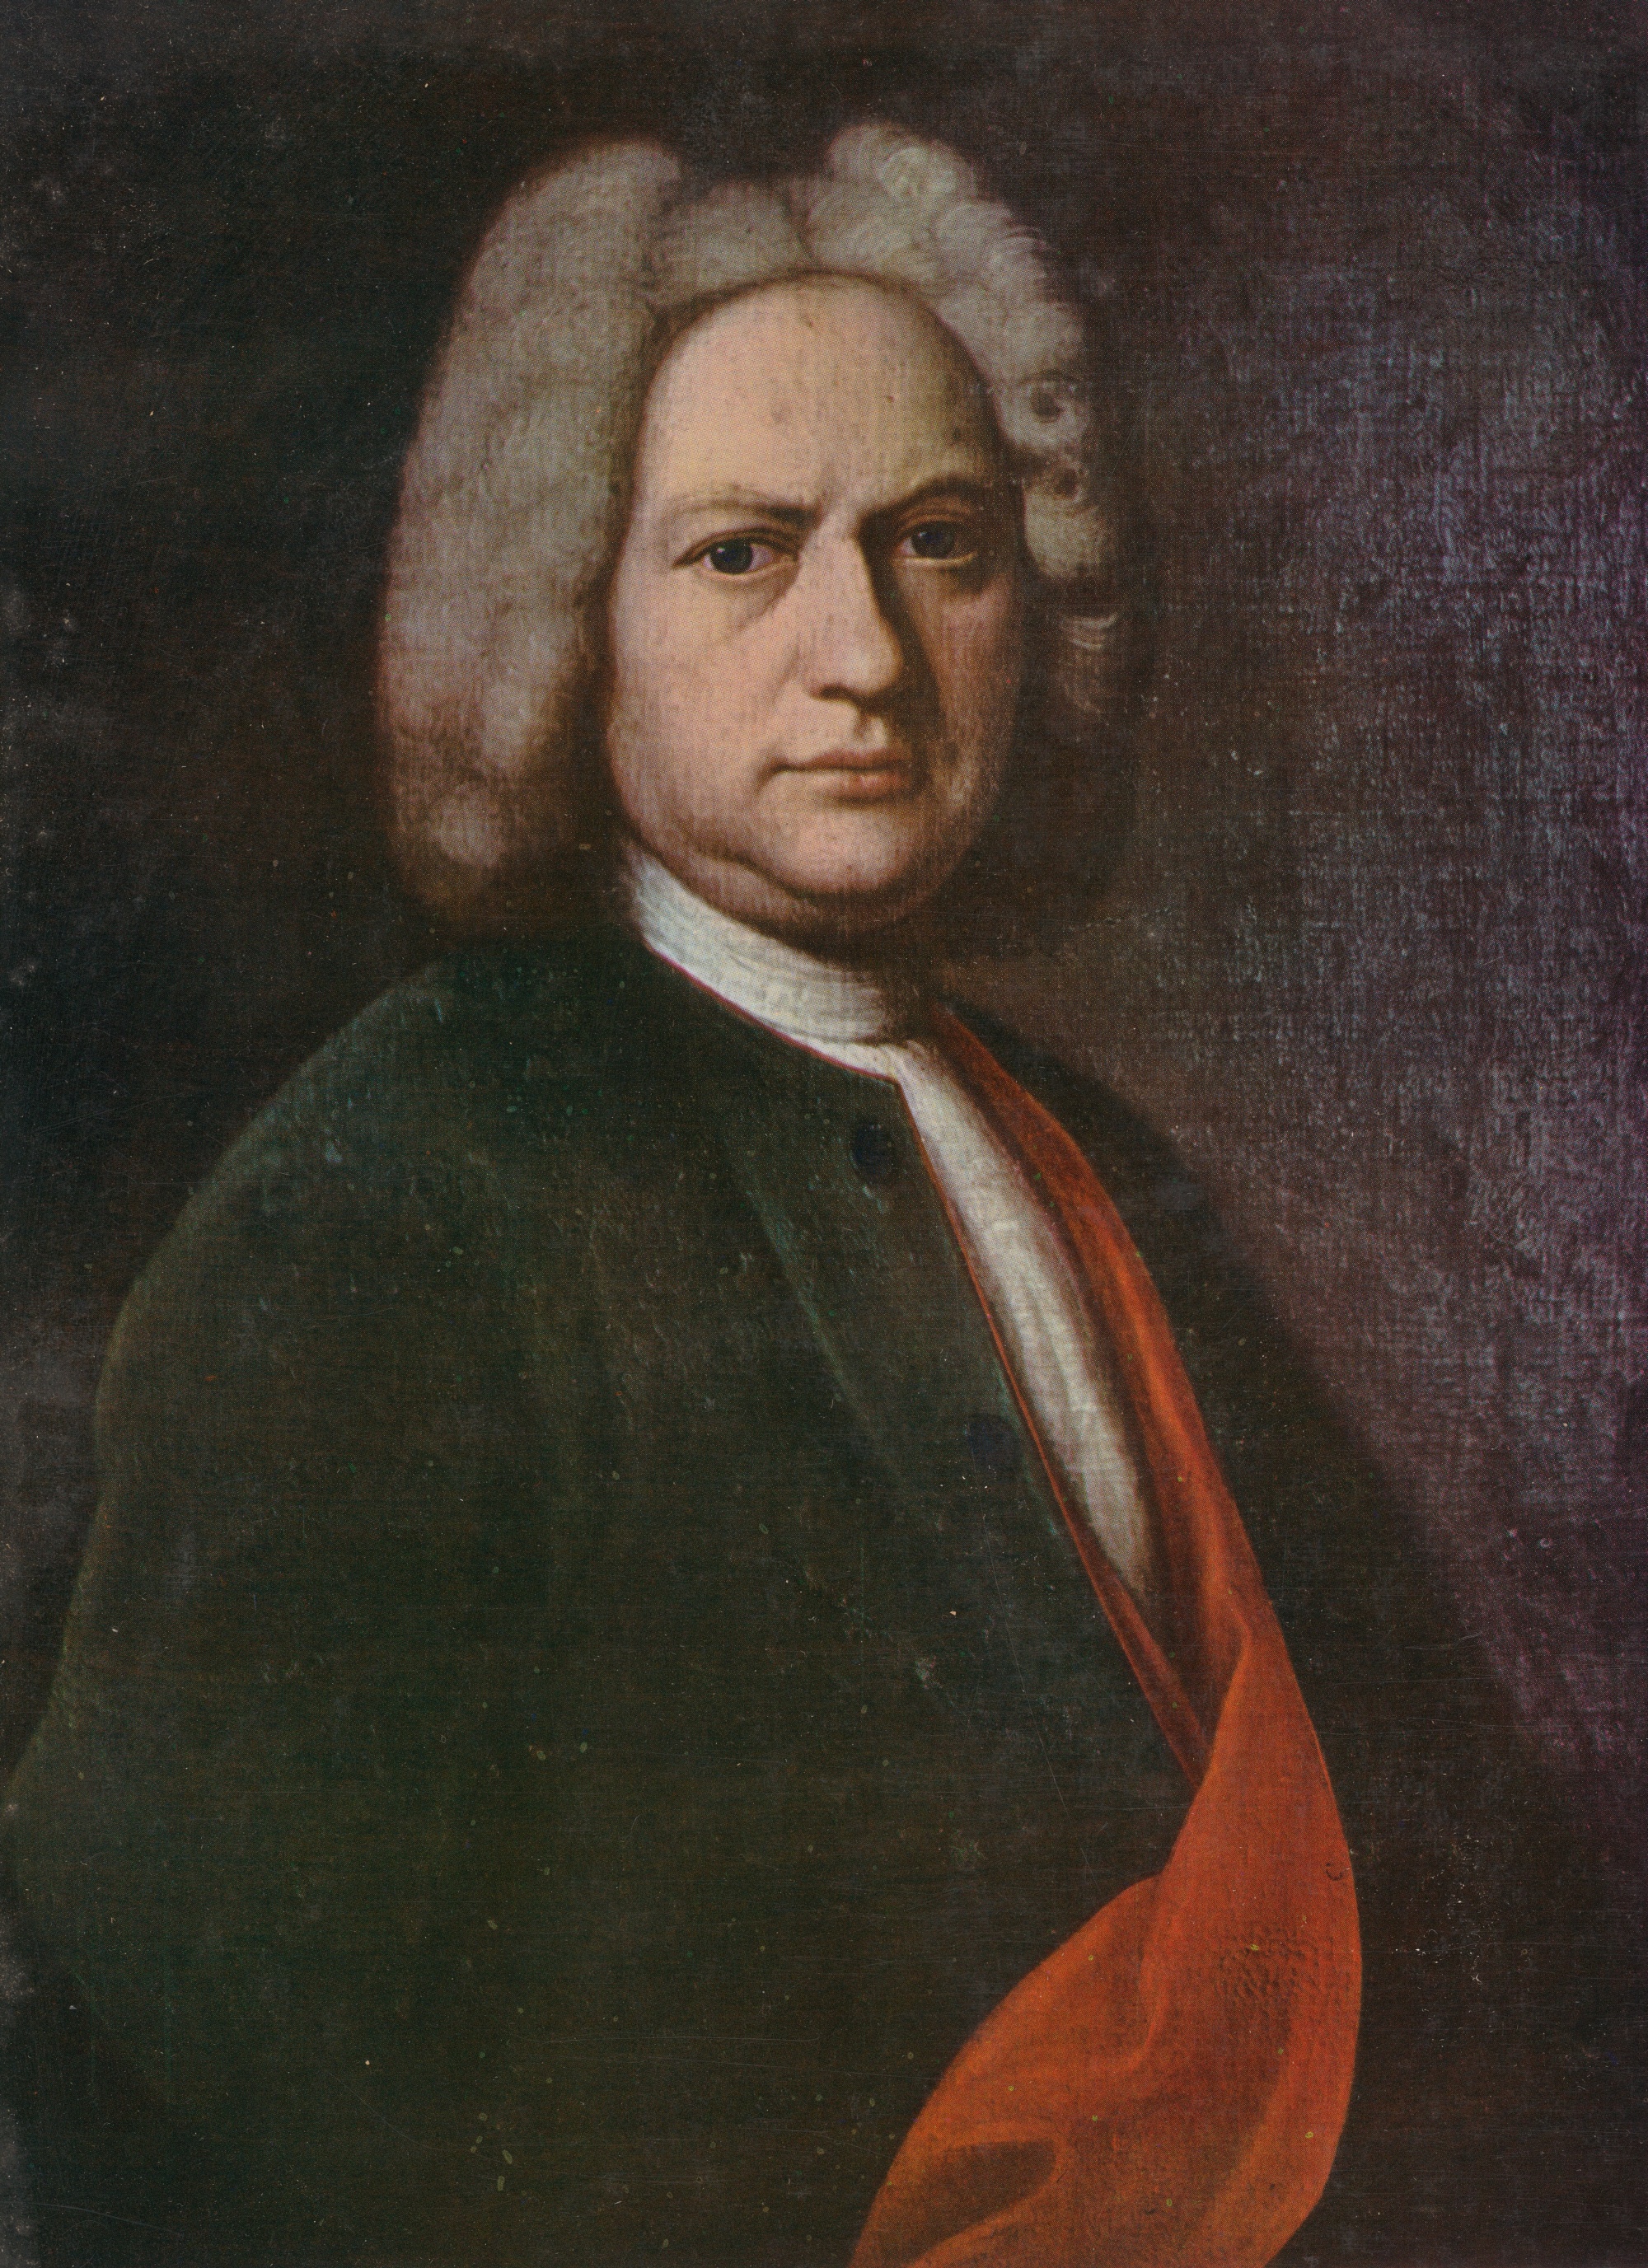 Johann Sebastian BACH, une peinture de J.J. IHLE, env. 1720